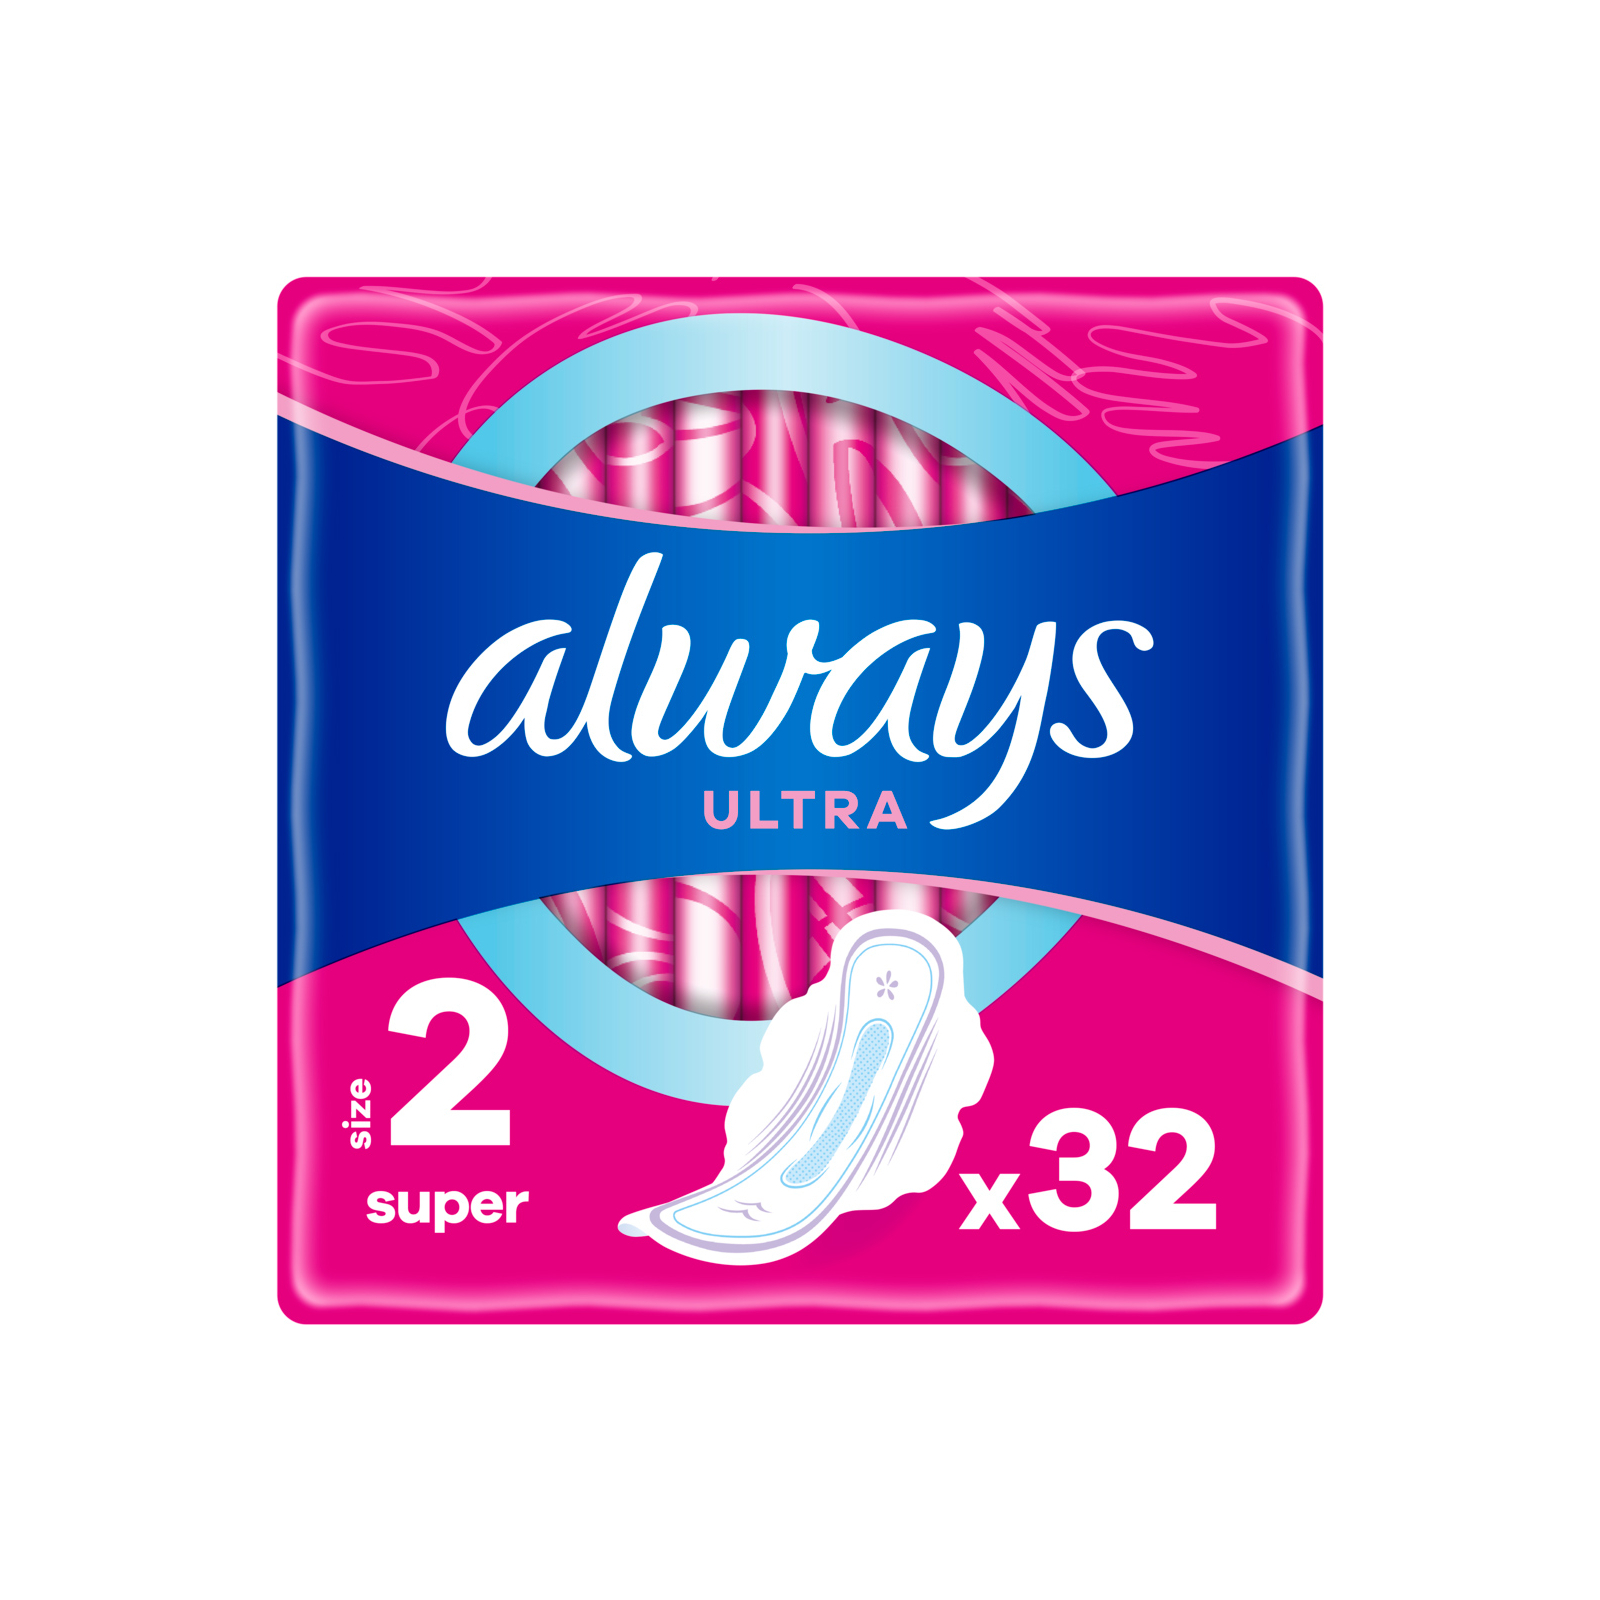 Гігієнічні прокладки Always Ultra Super (Розмір 2) 16 шт. (4015400006756)